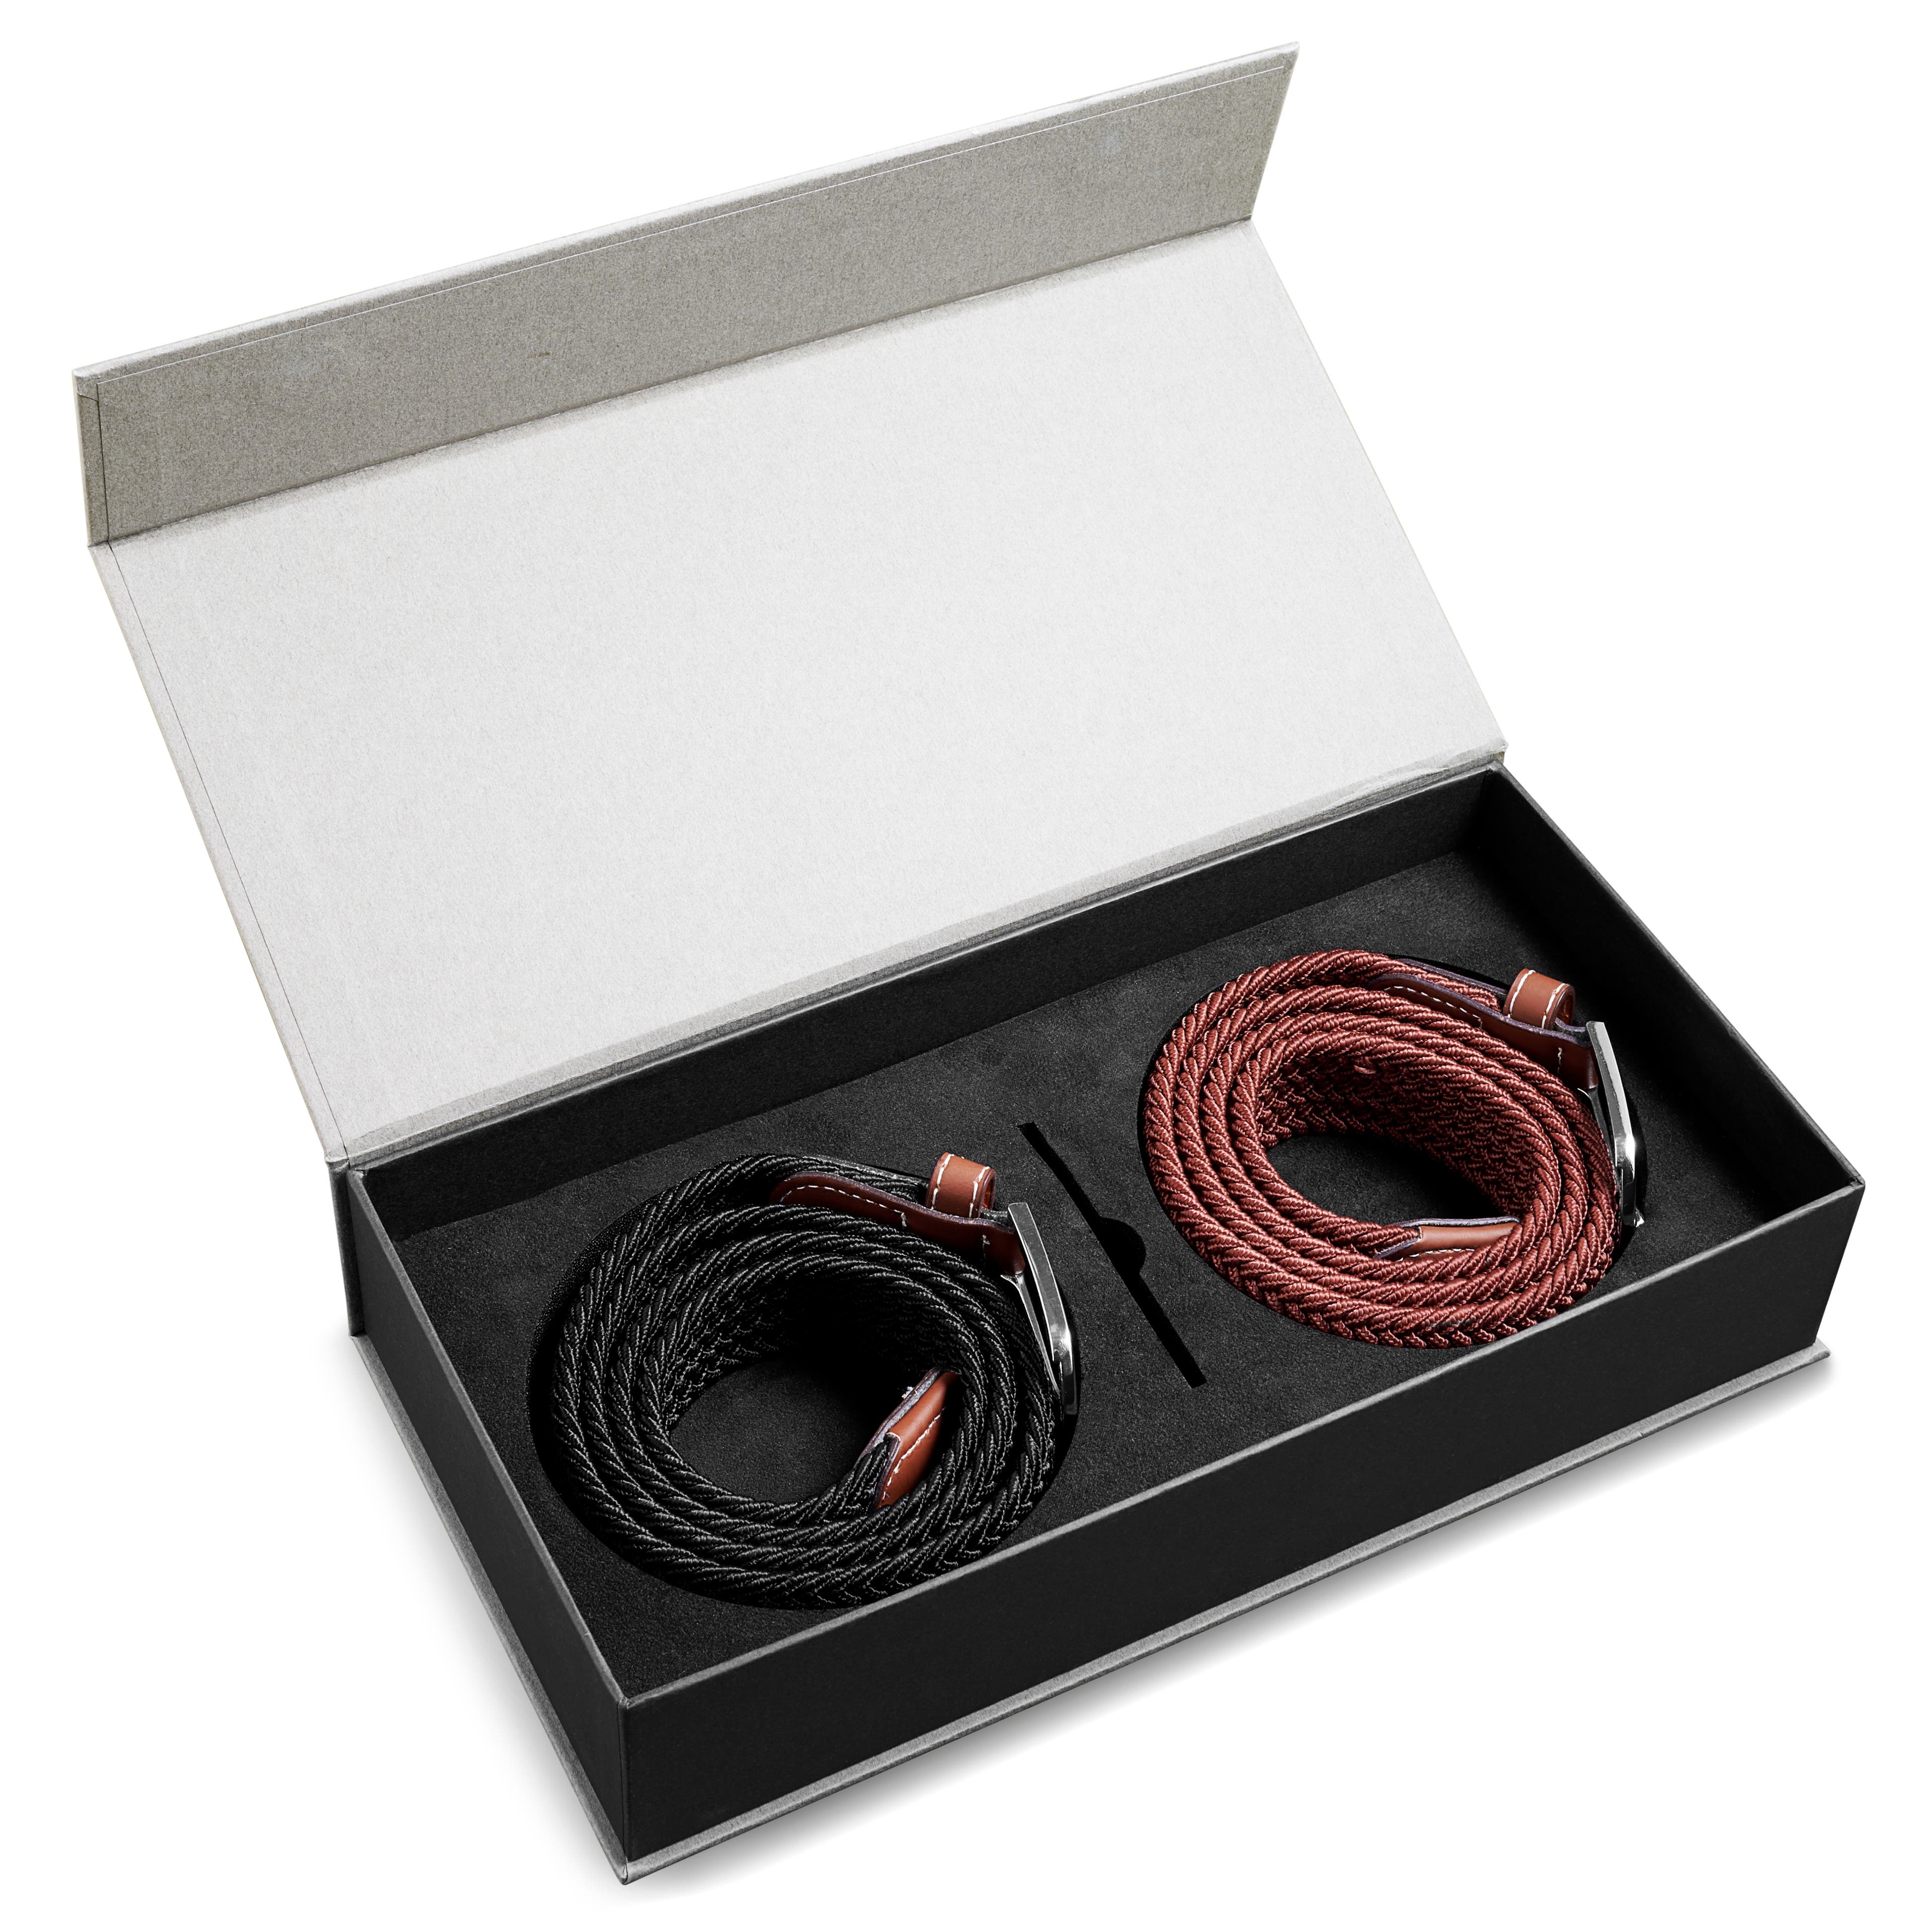 Caja de regalo para hombre básica | Cinturones elásticos en marrón y negro